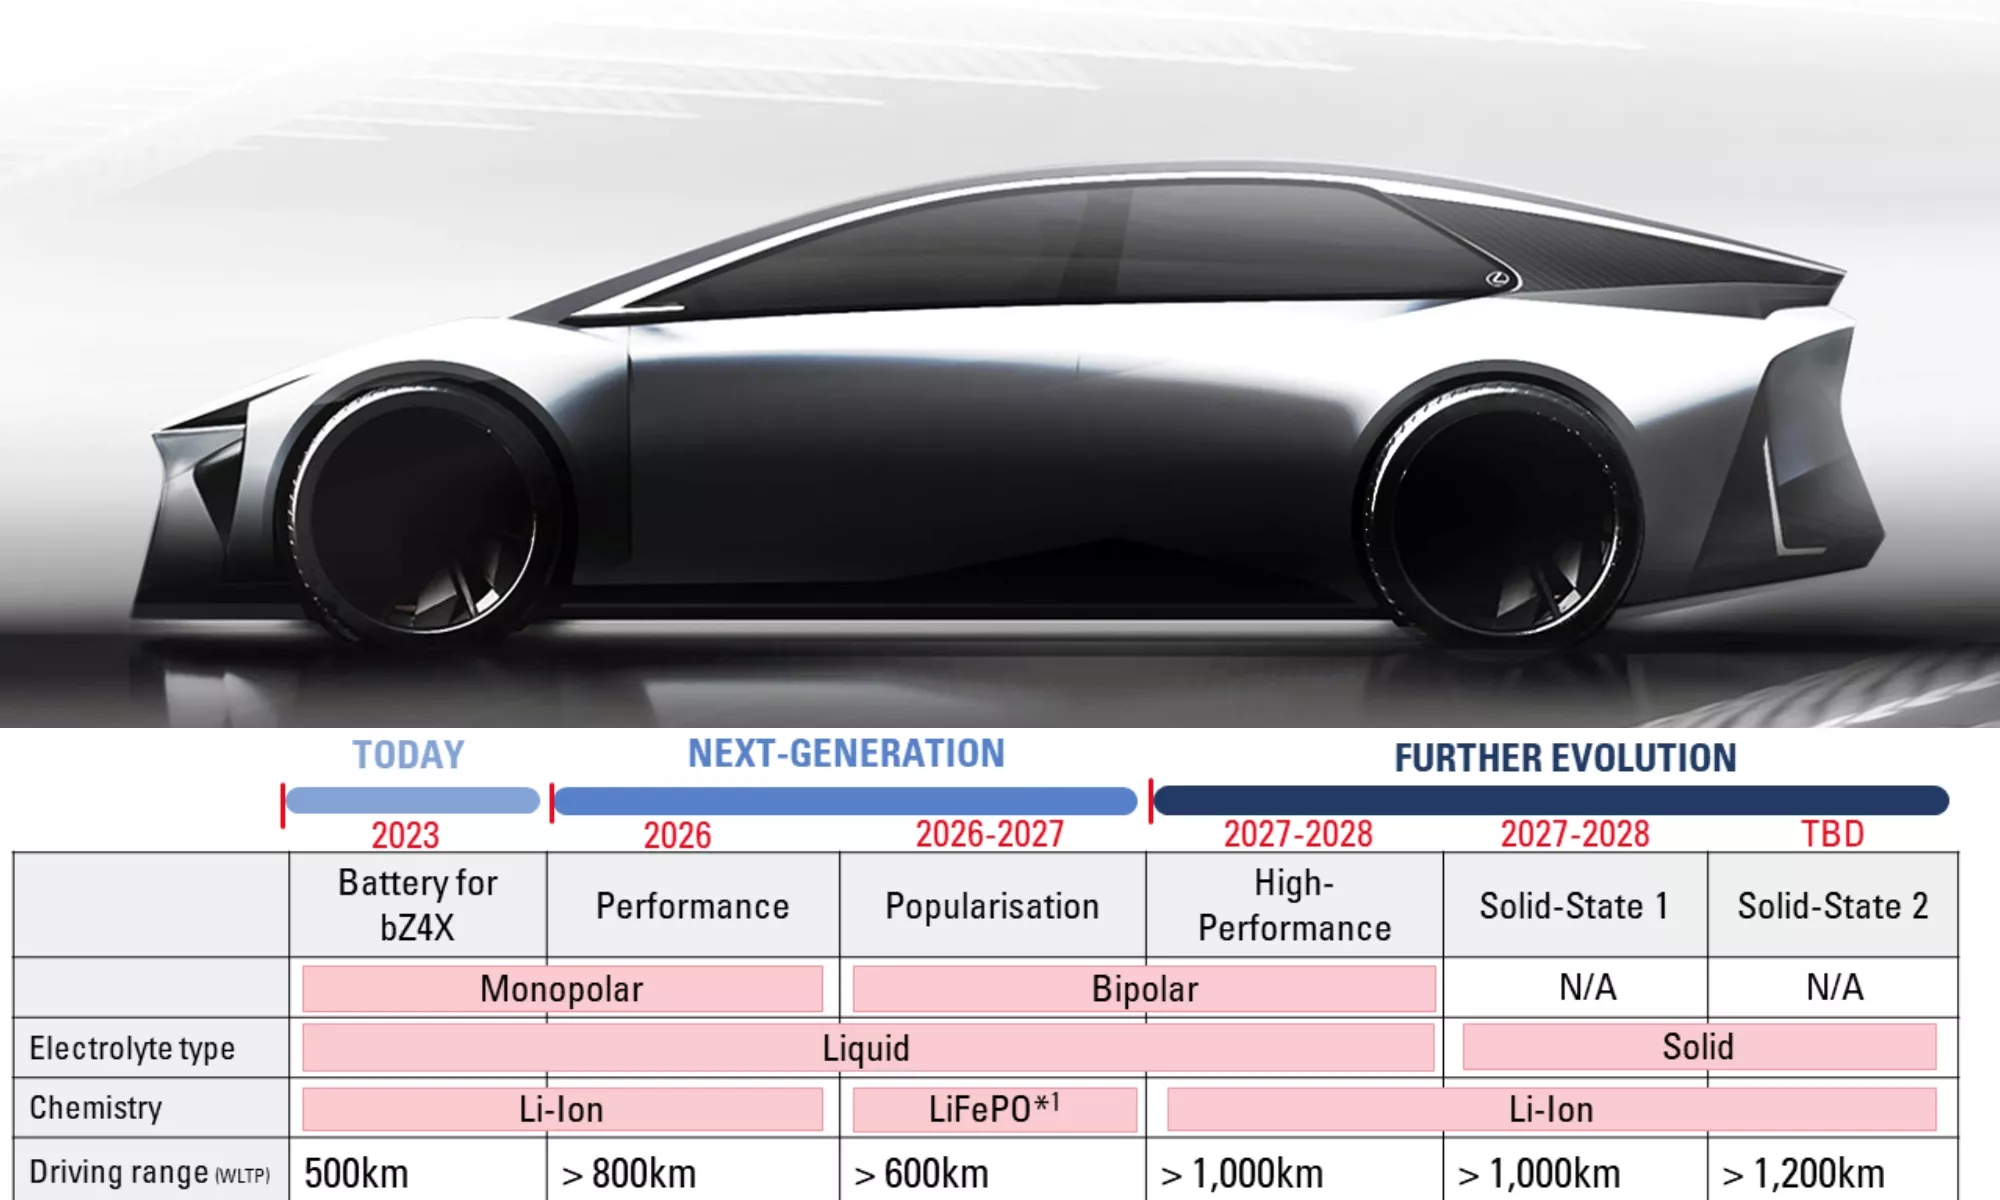 La próxima generación de baterías de Toyota llegará en 2026, pero habrá mucho más.